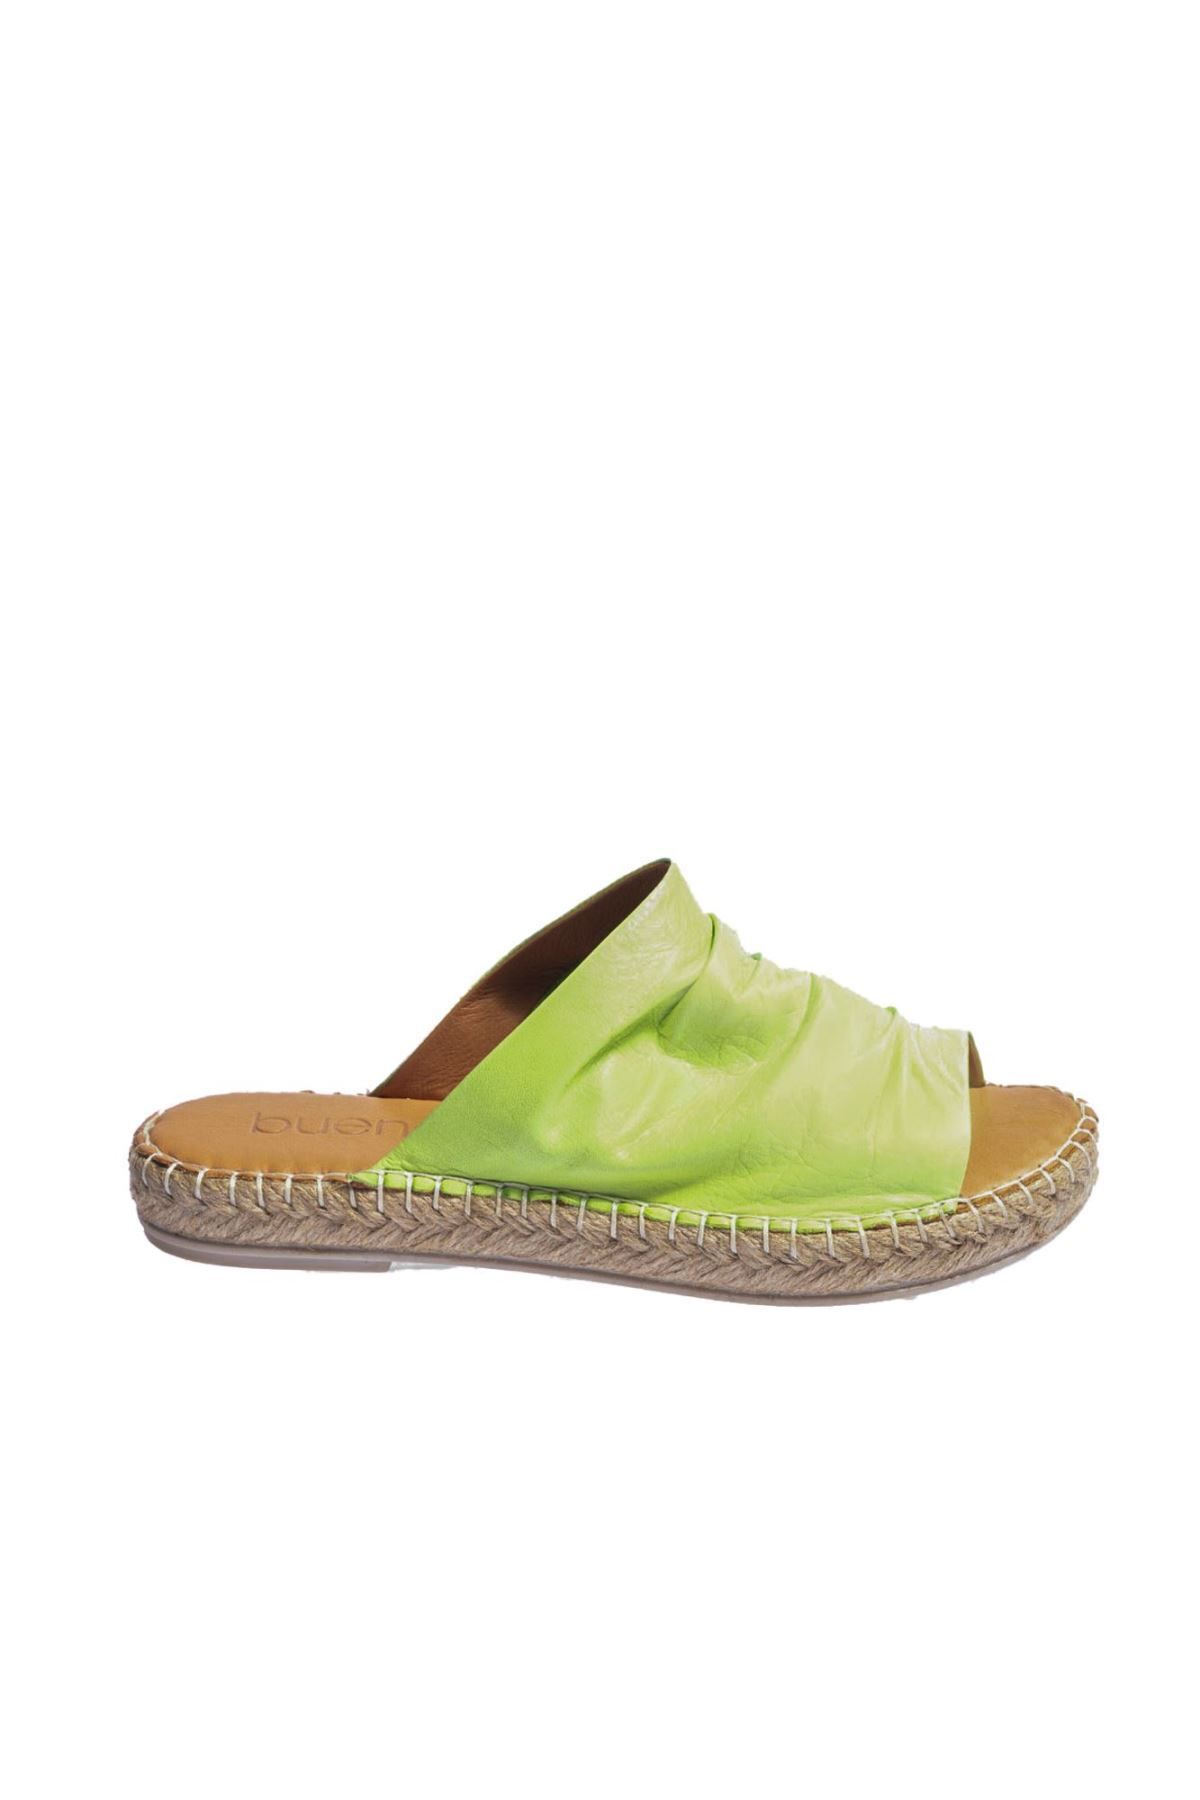 Genel Markalar Shoes Yeşil Deri Kadın Espadril Terlik